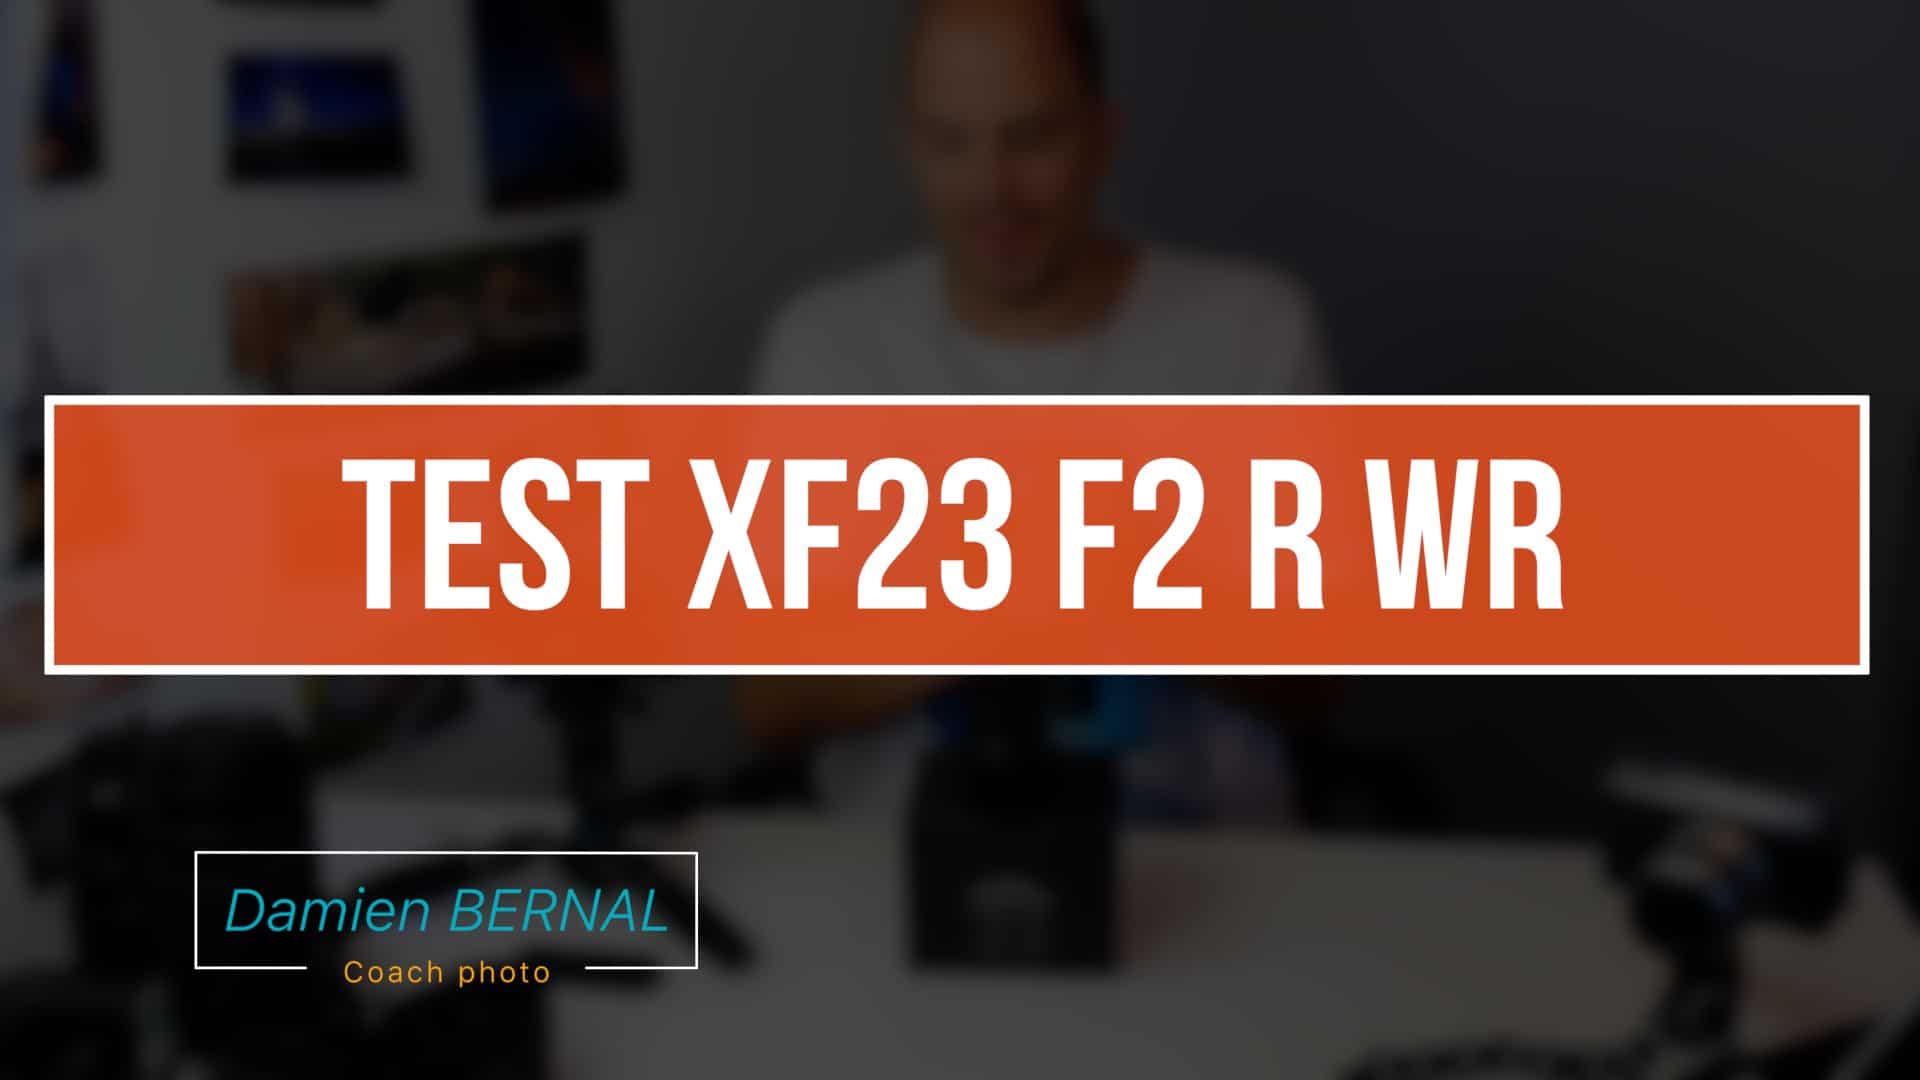 TEST XF 23 F2 R WR